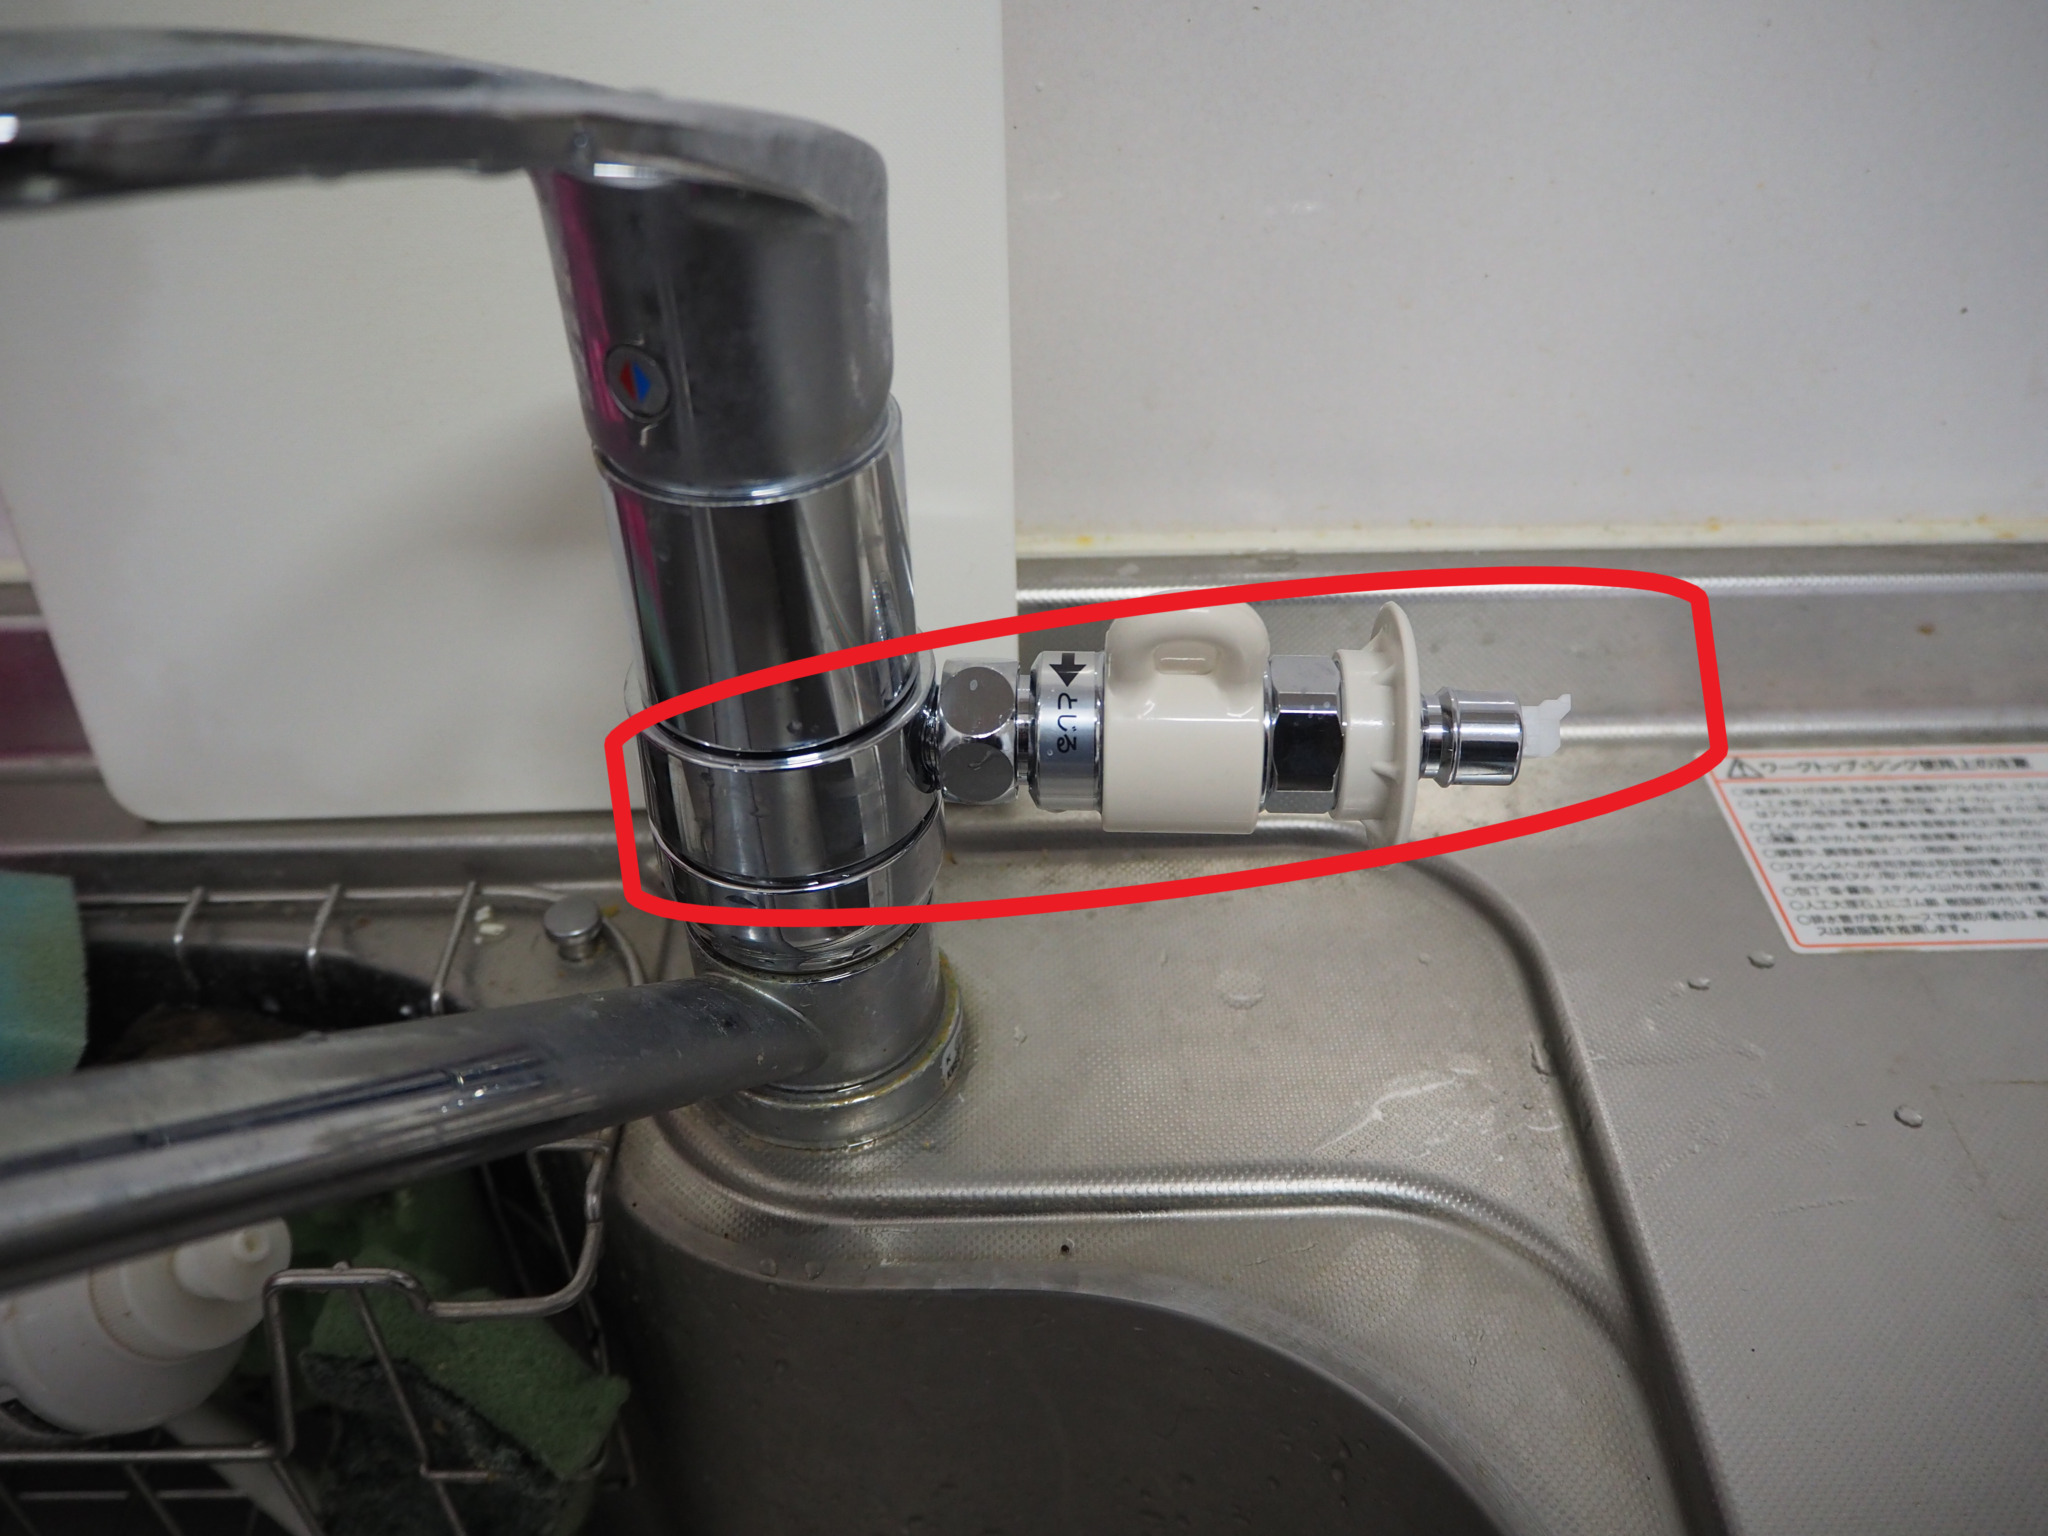 パナソニック食洗機を使用するために必要な分岐水栓の取り付け方は？画像でわかりやすく説明いたします。(KVK水栓) | 資格の種